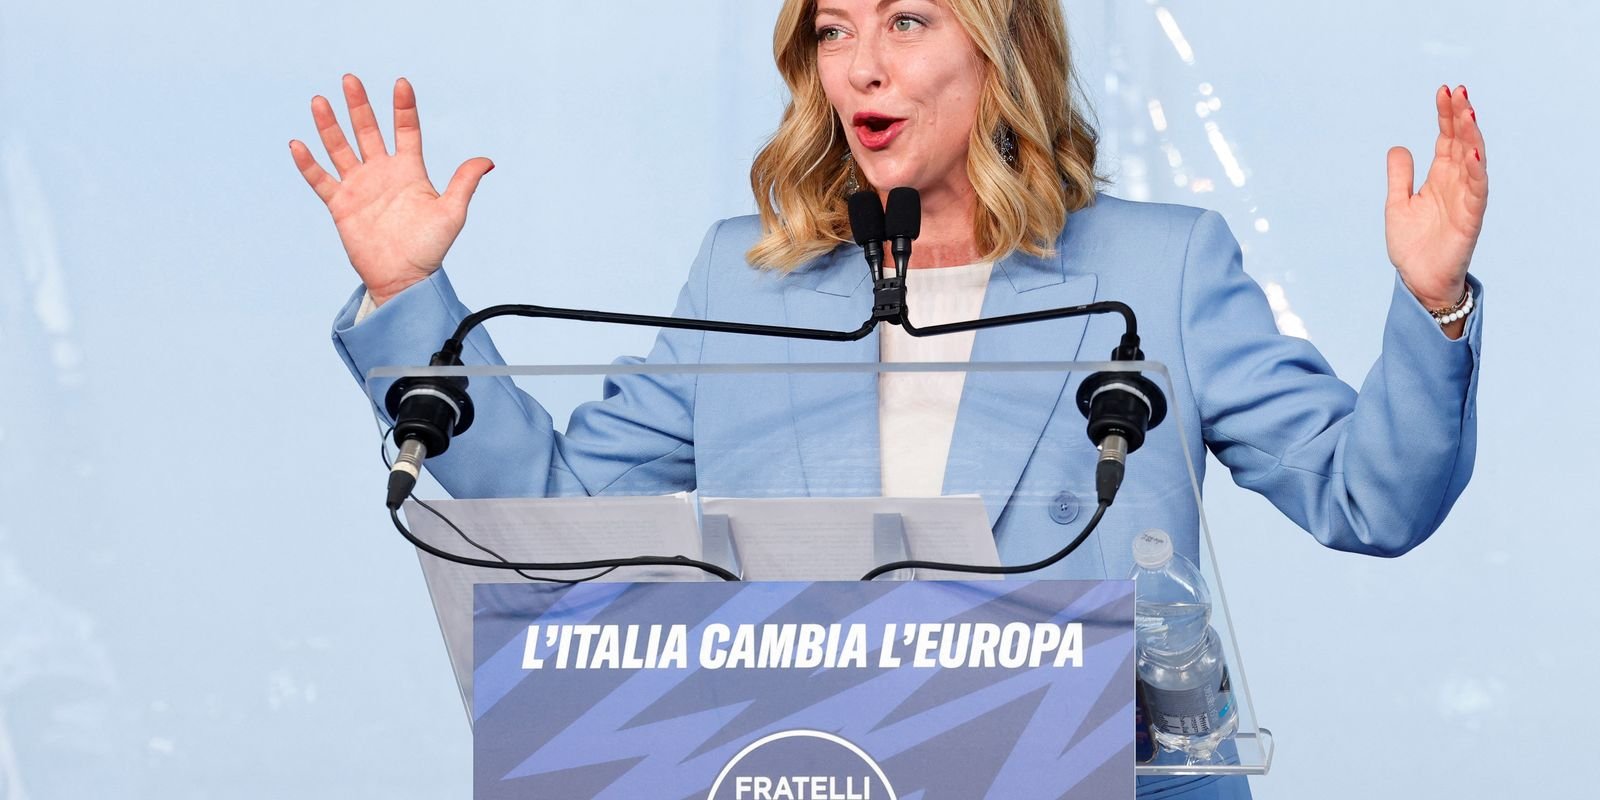 Premiê italiana Meloni anuncia candidatura às eleições europeias